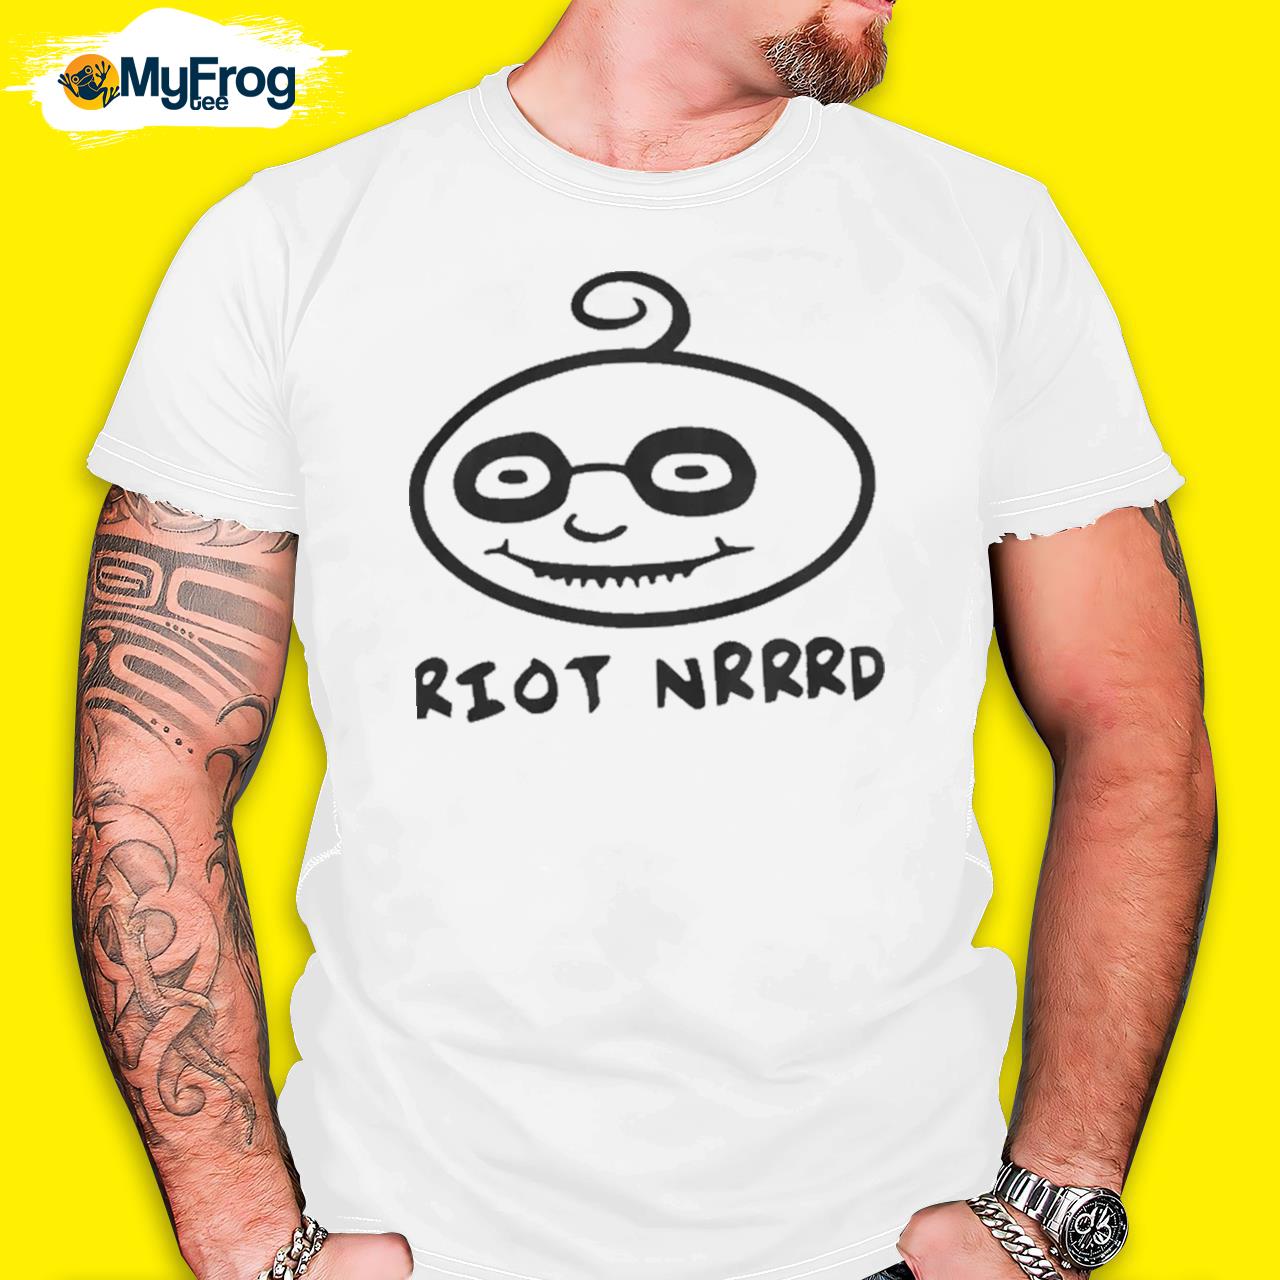 Riot Nrrrd Shirt